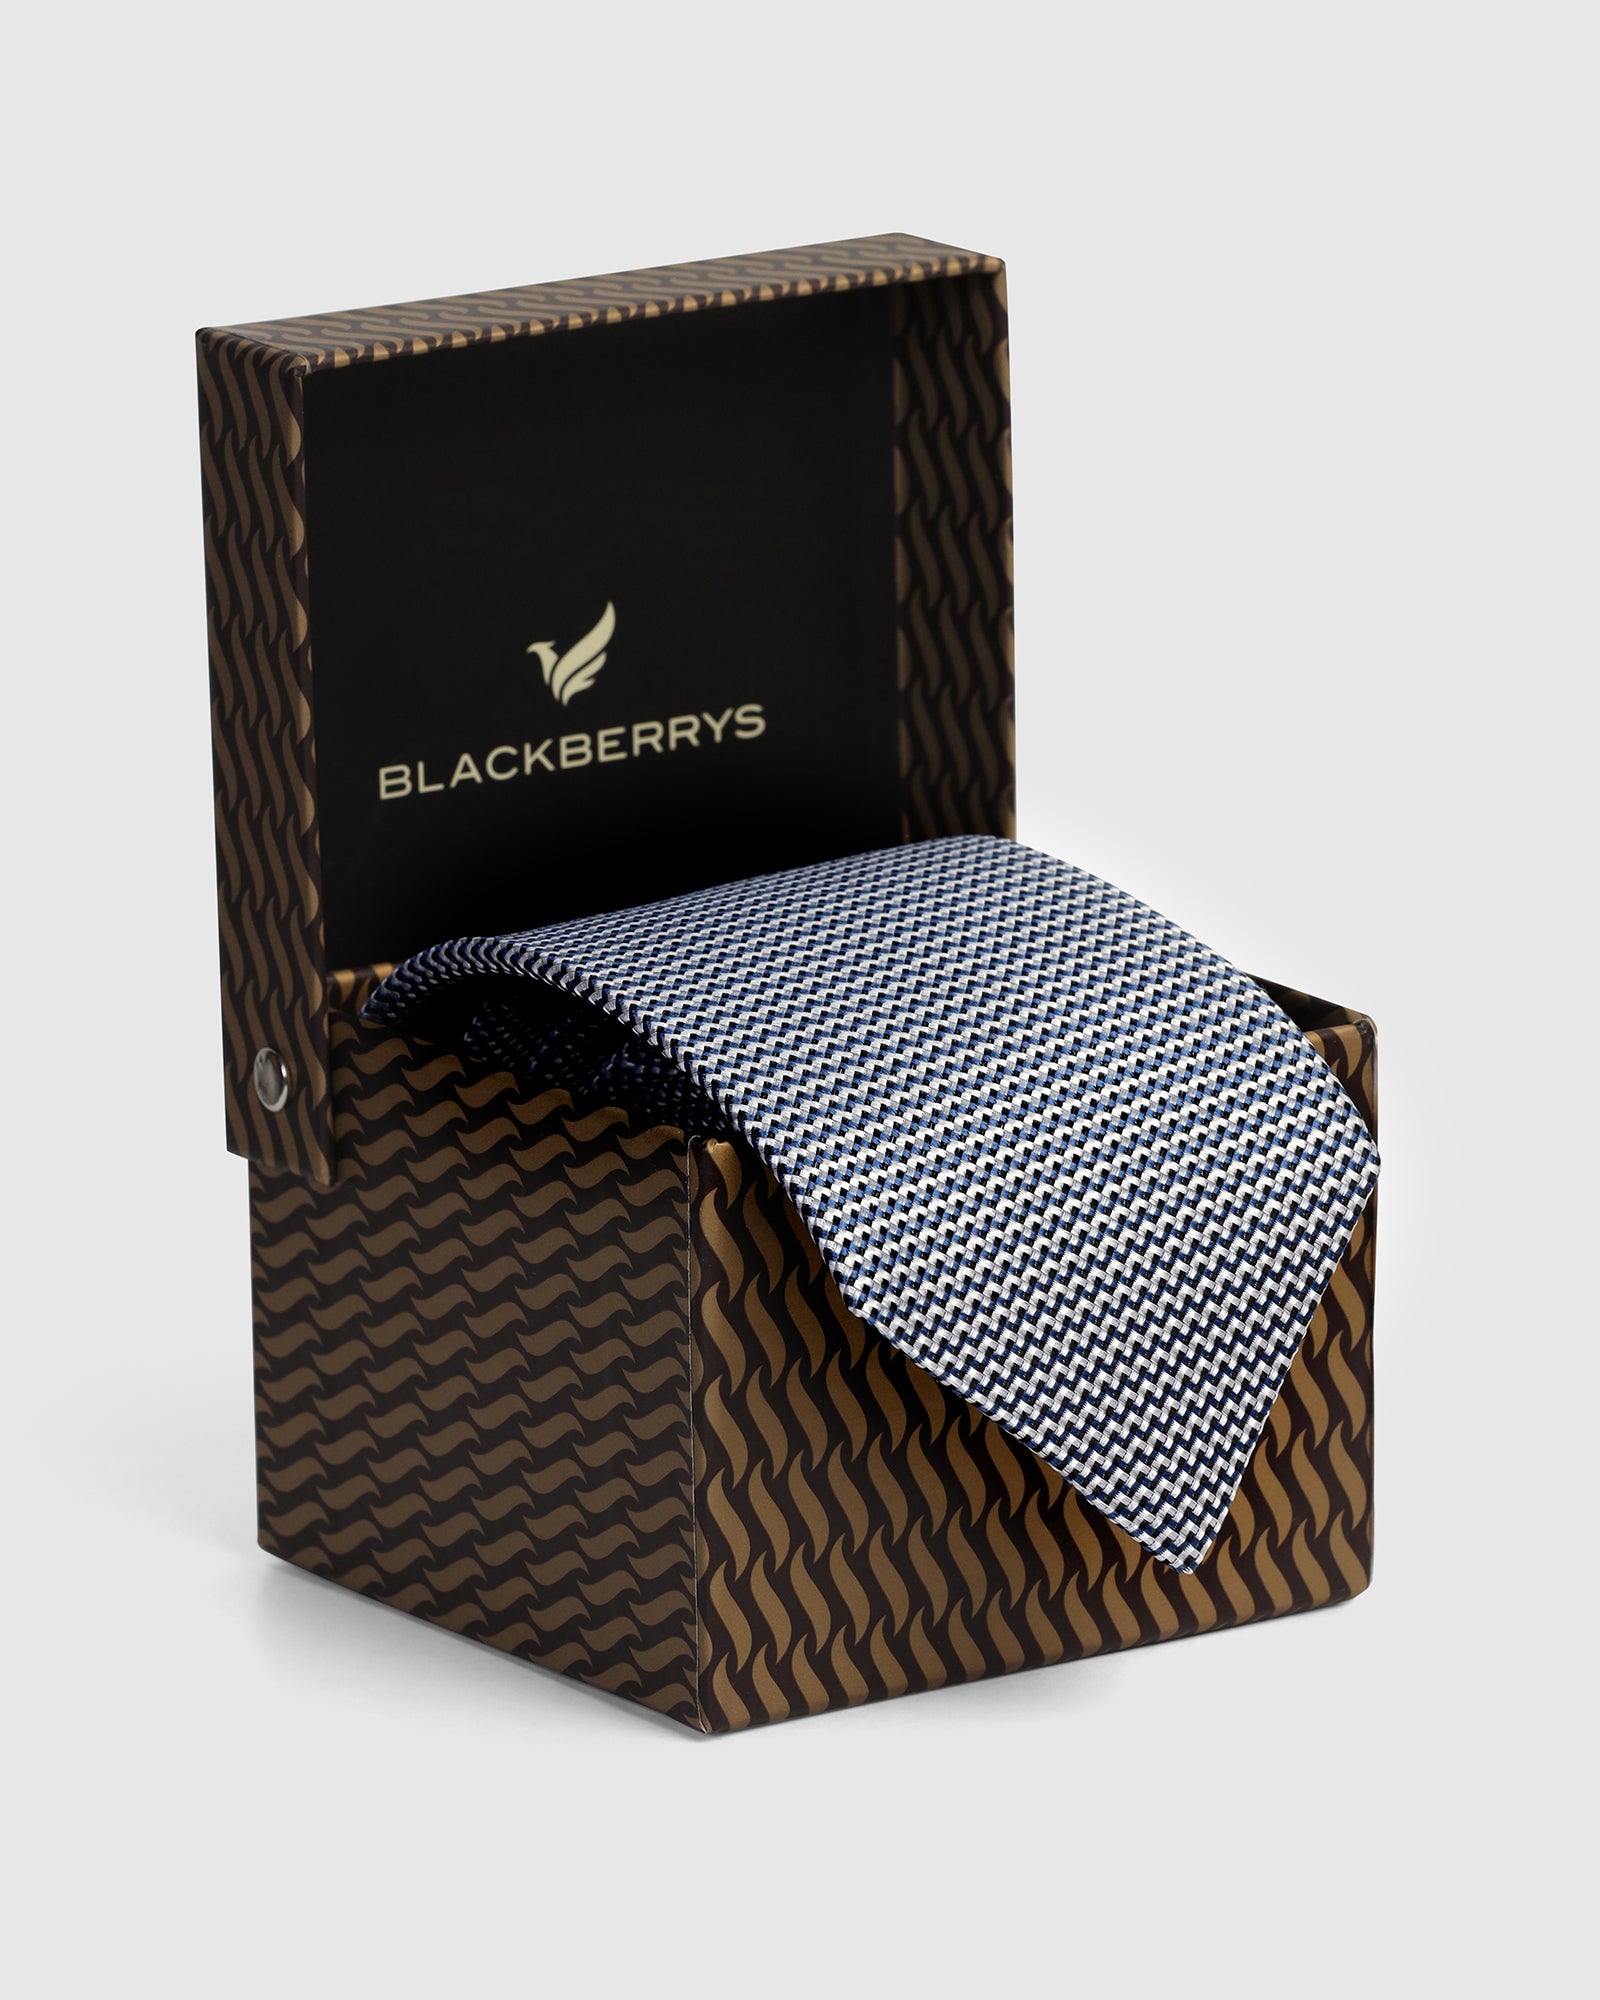 Silk Blue Printed Tie - Valery